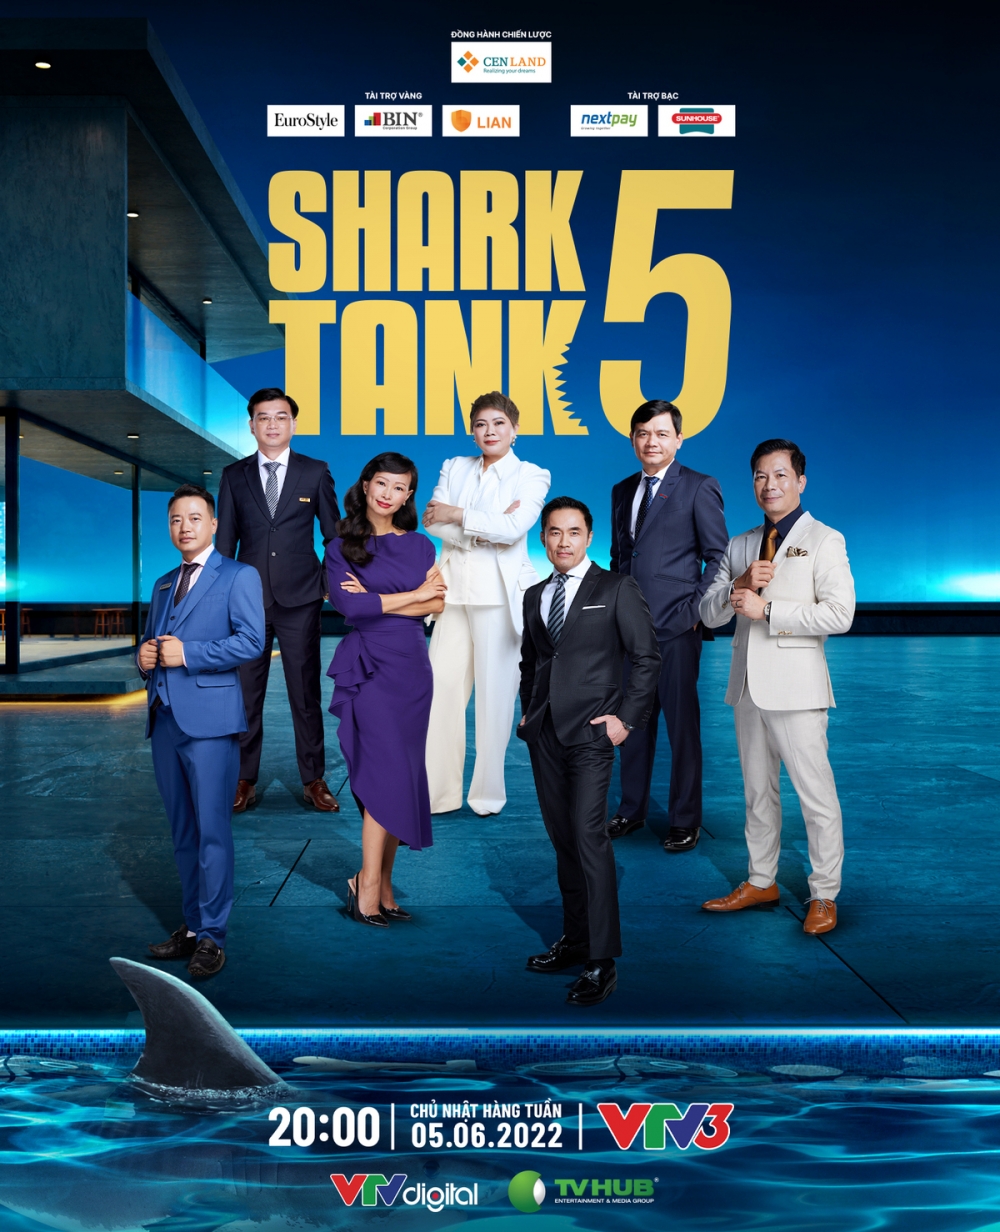 Shark Linh: Bất ngờ nổi danh sau Thương vụ bạc tỷ - Ảnh 2